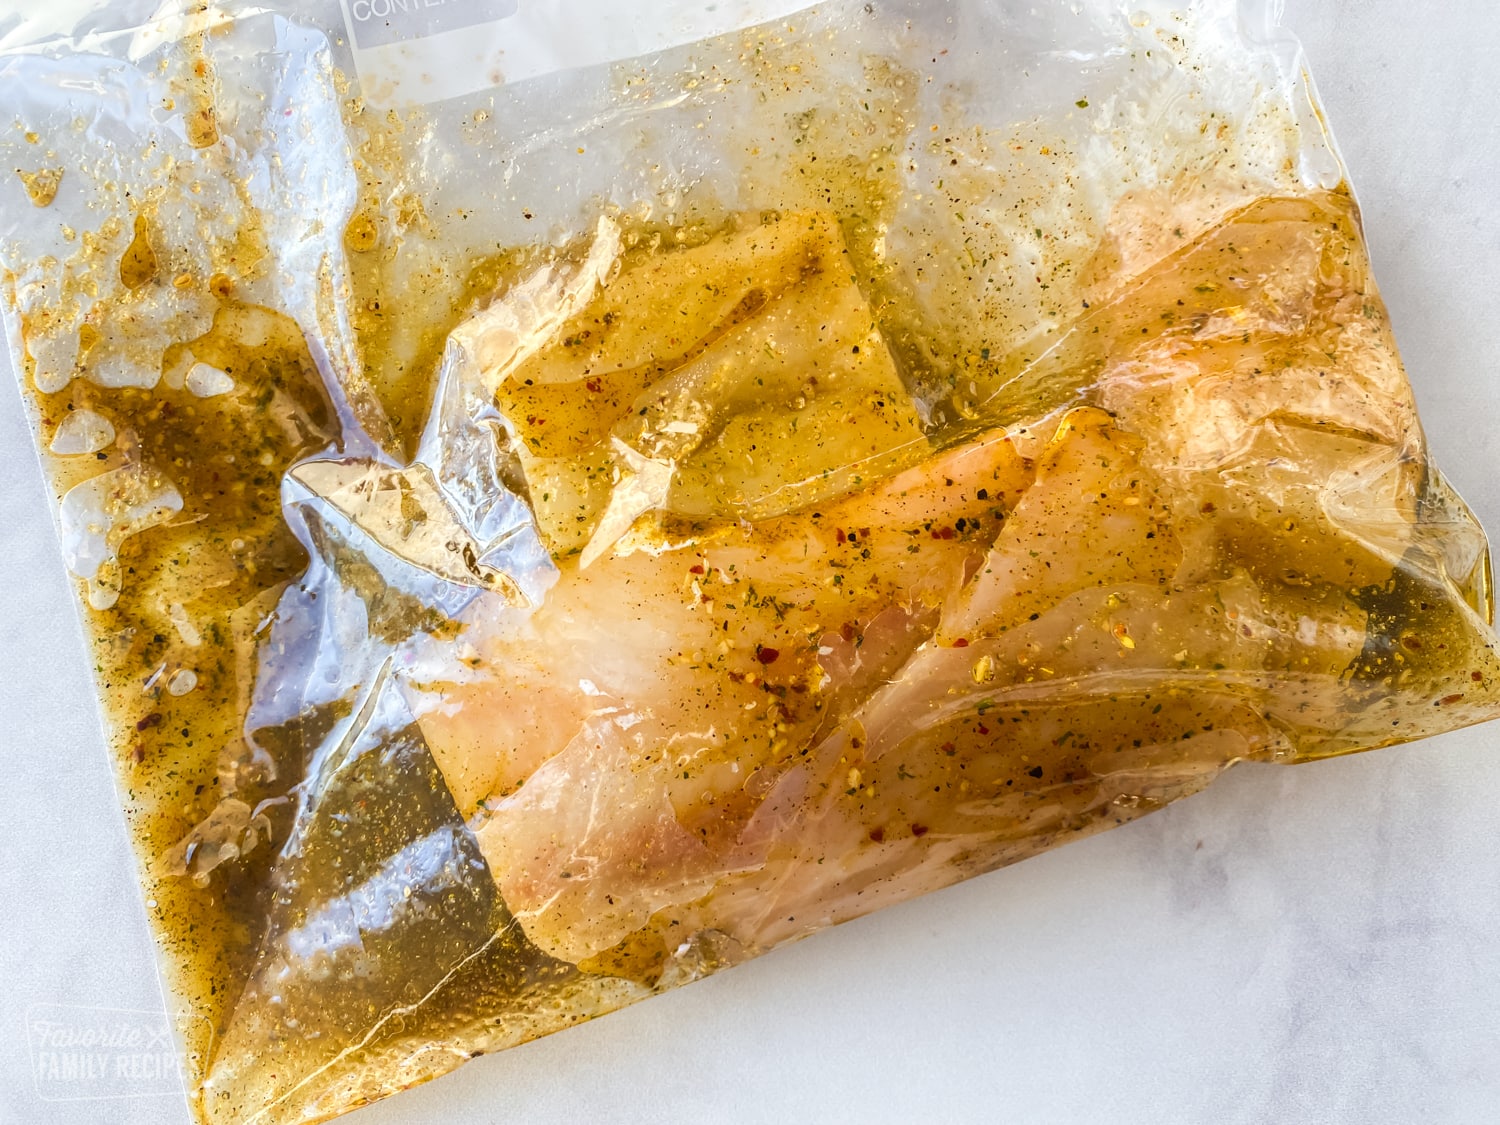 Mahi mahi in marinade in a bag